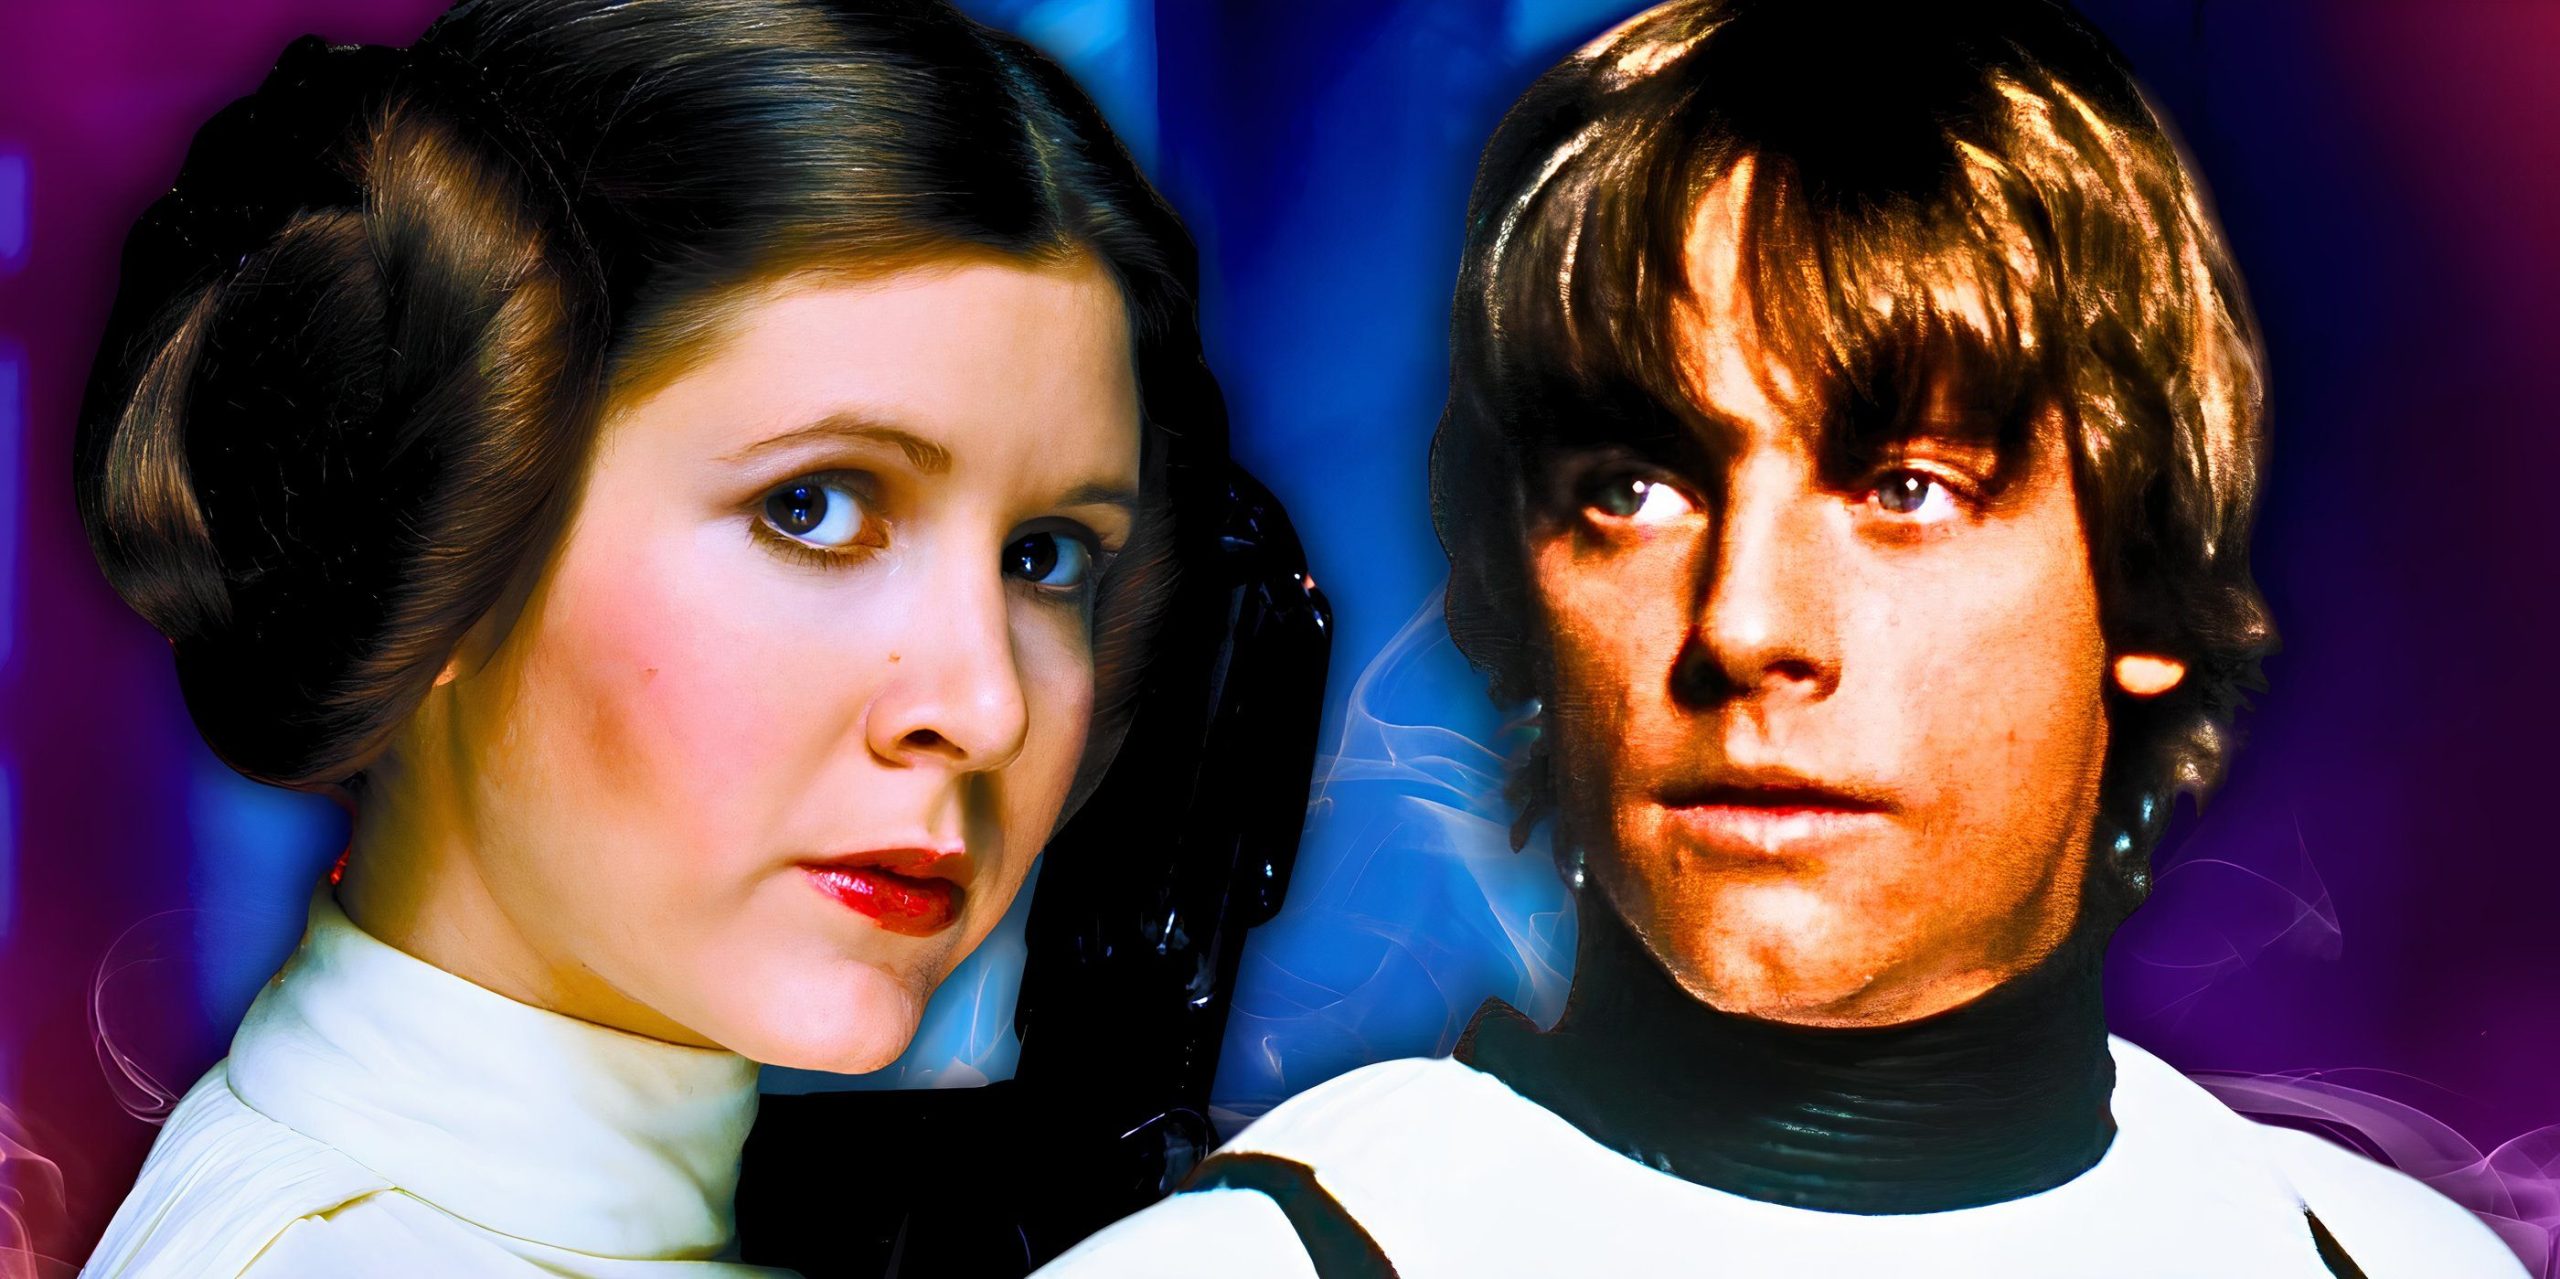 Leia intercambia lugares con Luke en este brillante arte de Star Wars